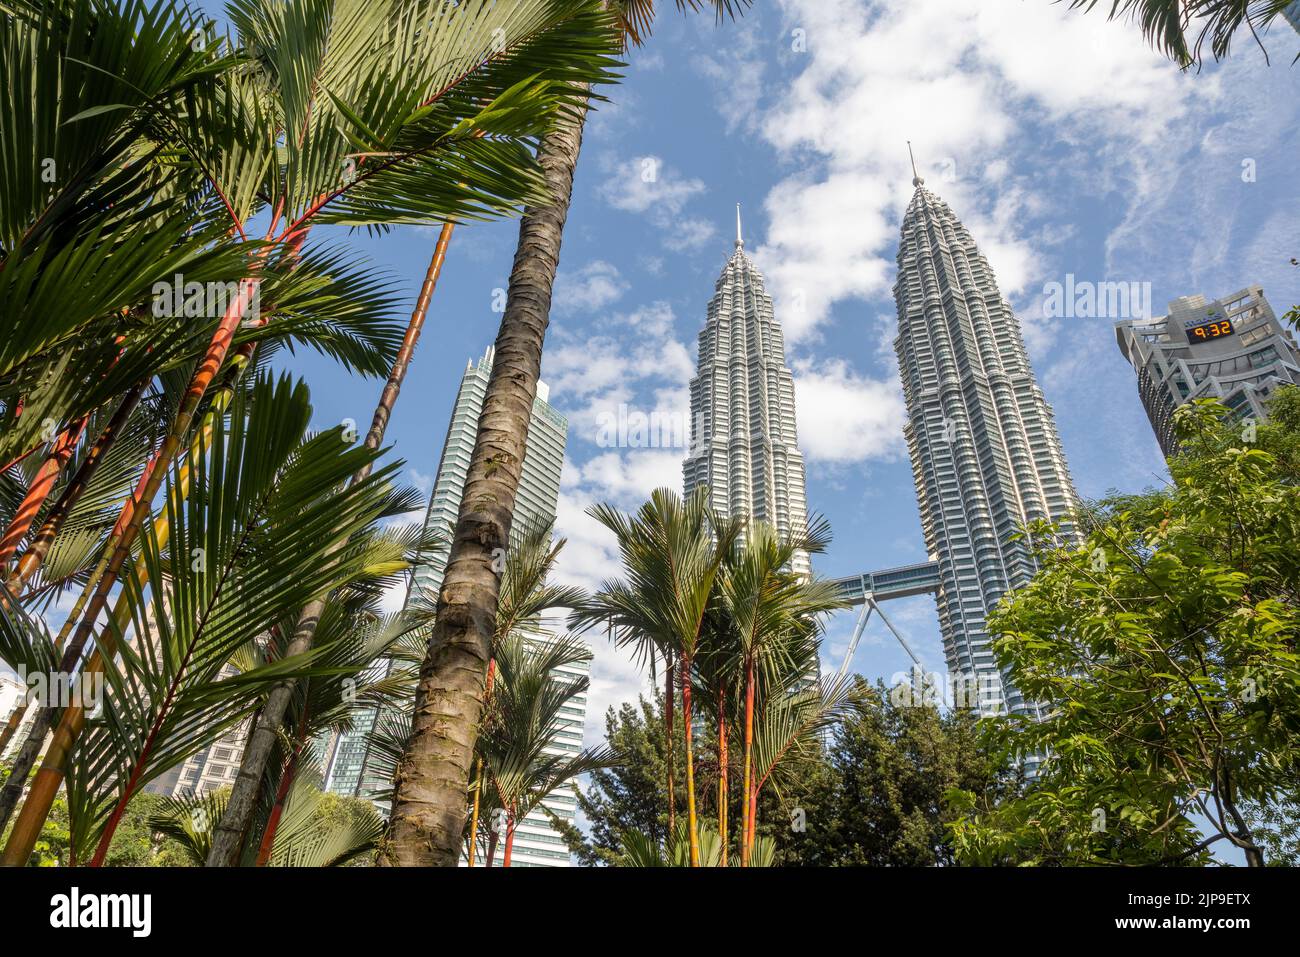 Kuala Lumpur, Malaisie - 13 août 2022 : vue sur les tours jumelles à travers les palmiers du parc KLCC. Oasis urbaine avec spectacle de fontaine. Banque D'Images